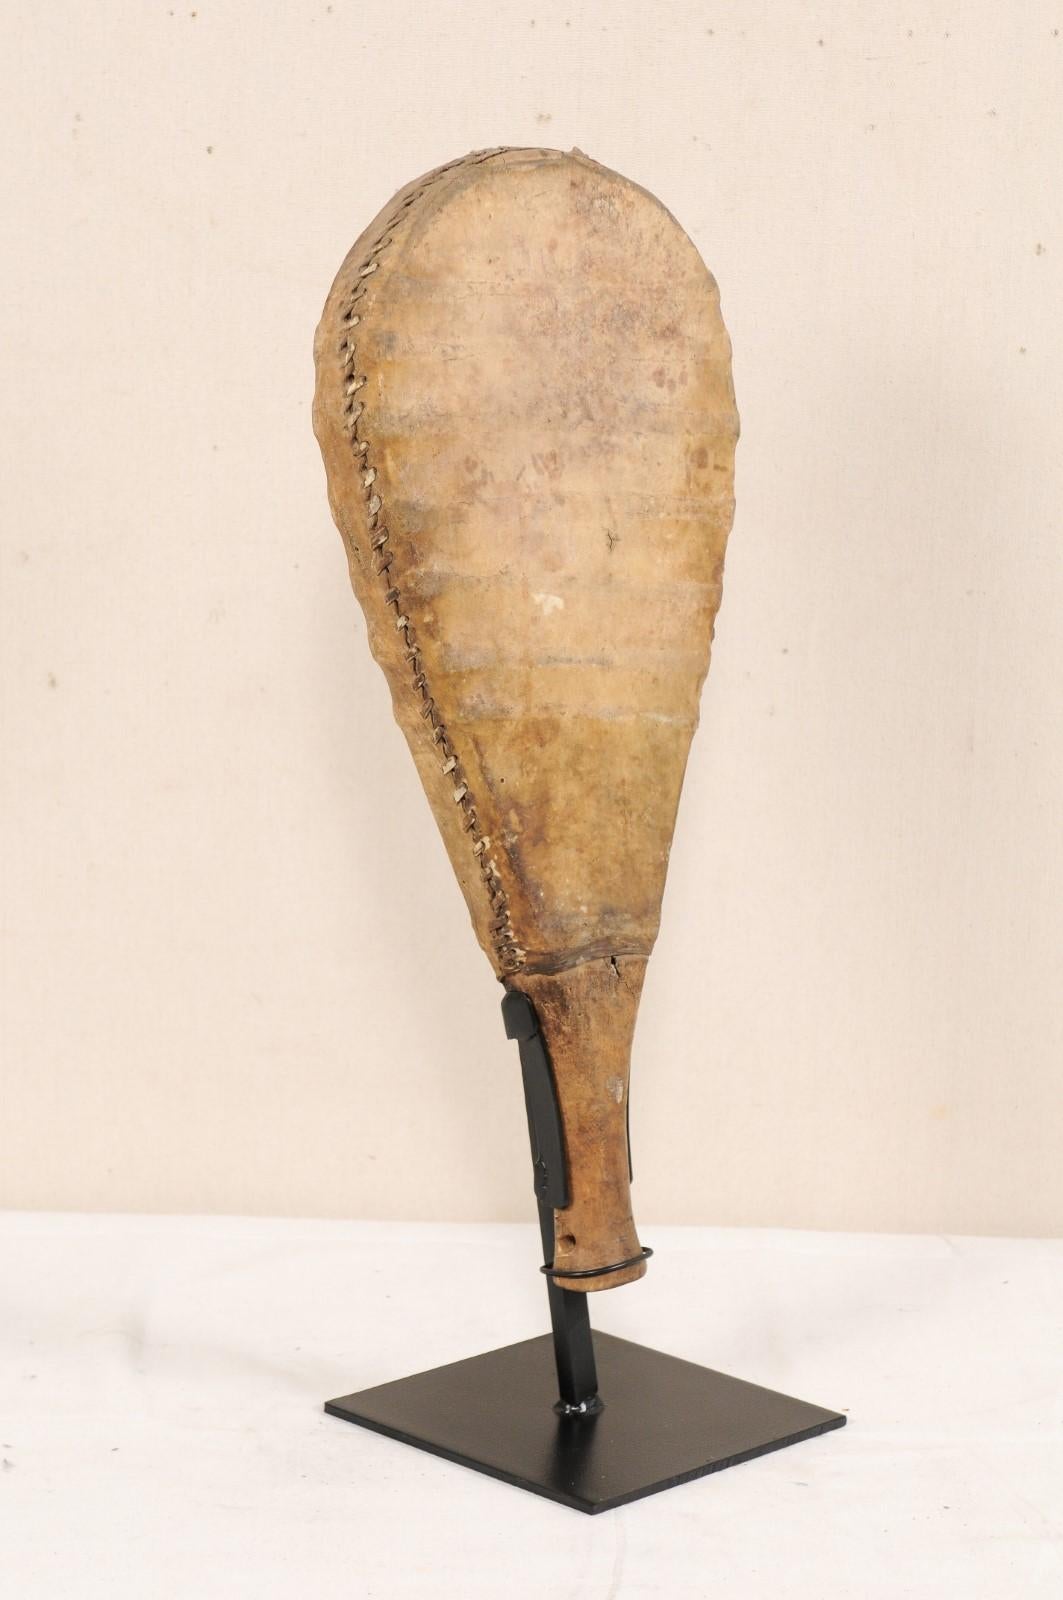 Ein Spielpaddel aus Leder und Holz aus der Mitte des 20. Jahrhunderts. Dieses alte Spielpaddel aus Indien hat einen Holzgriff und einen tropfenförmigen Körper, der mit gedehntem Leder umwickelt und an den Seiten handgenäht ist. Das Paddel wurde auf